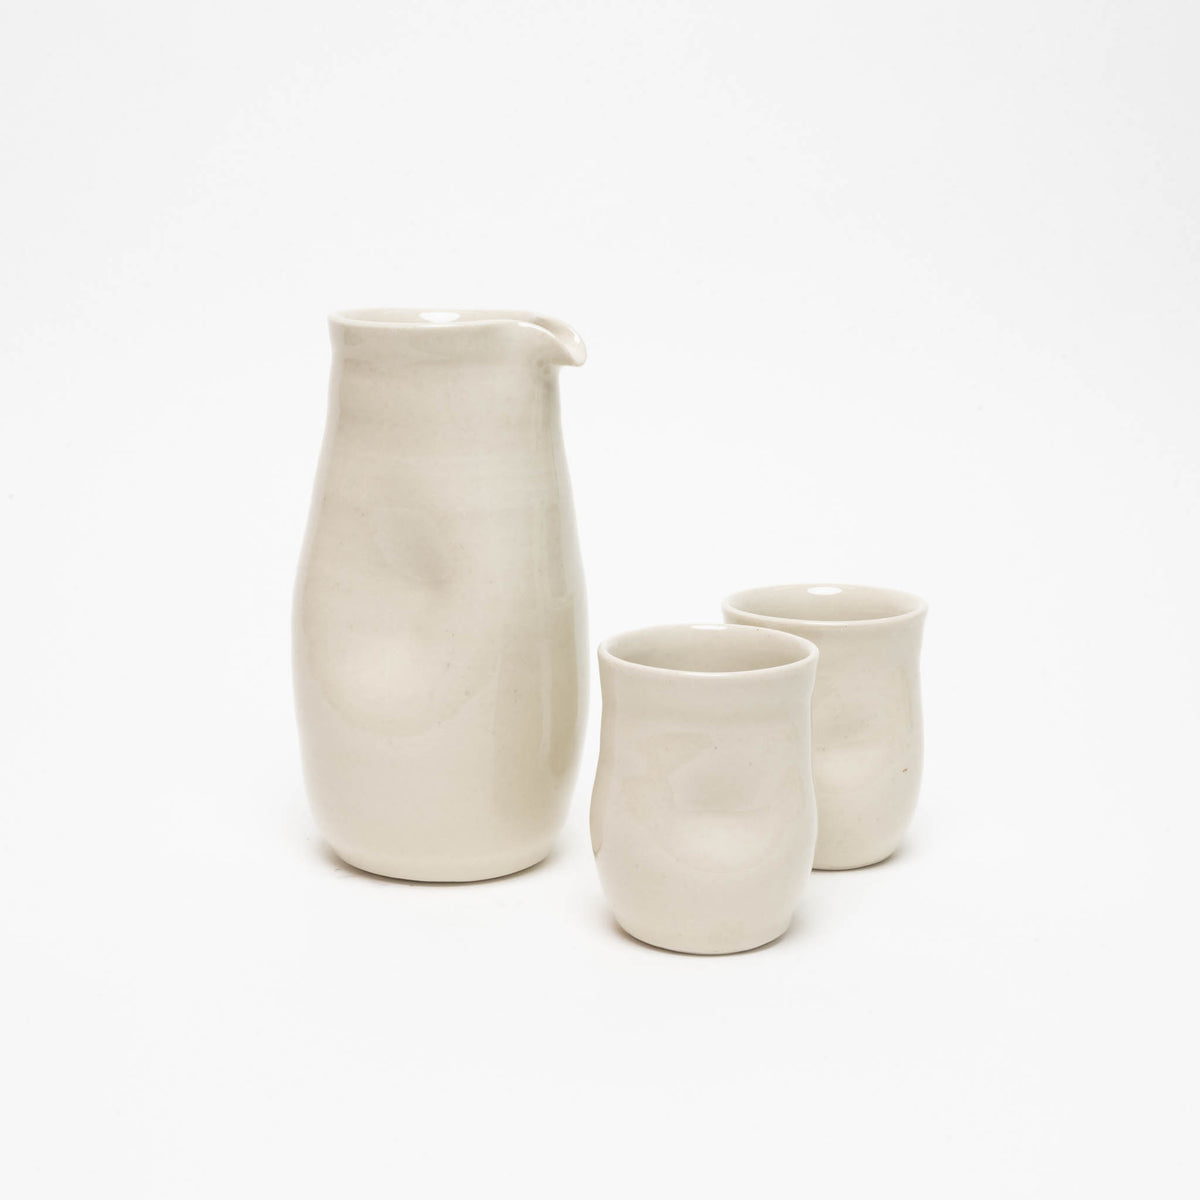 Natural porcelain jug, bulbous